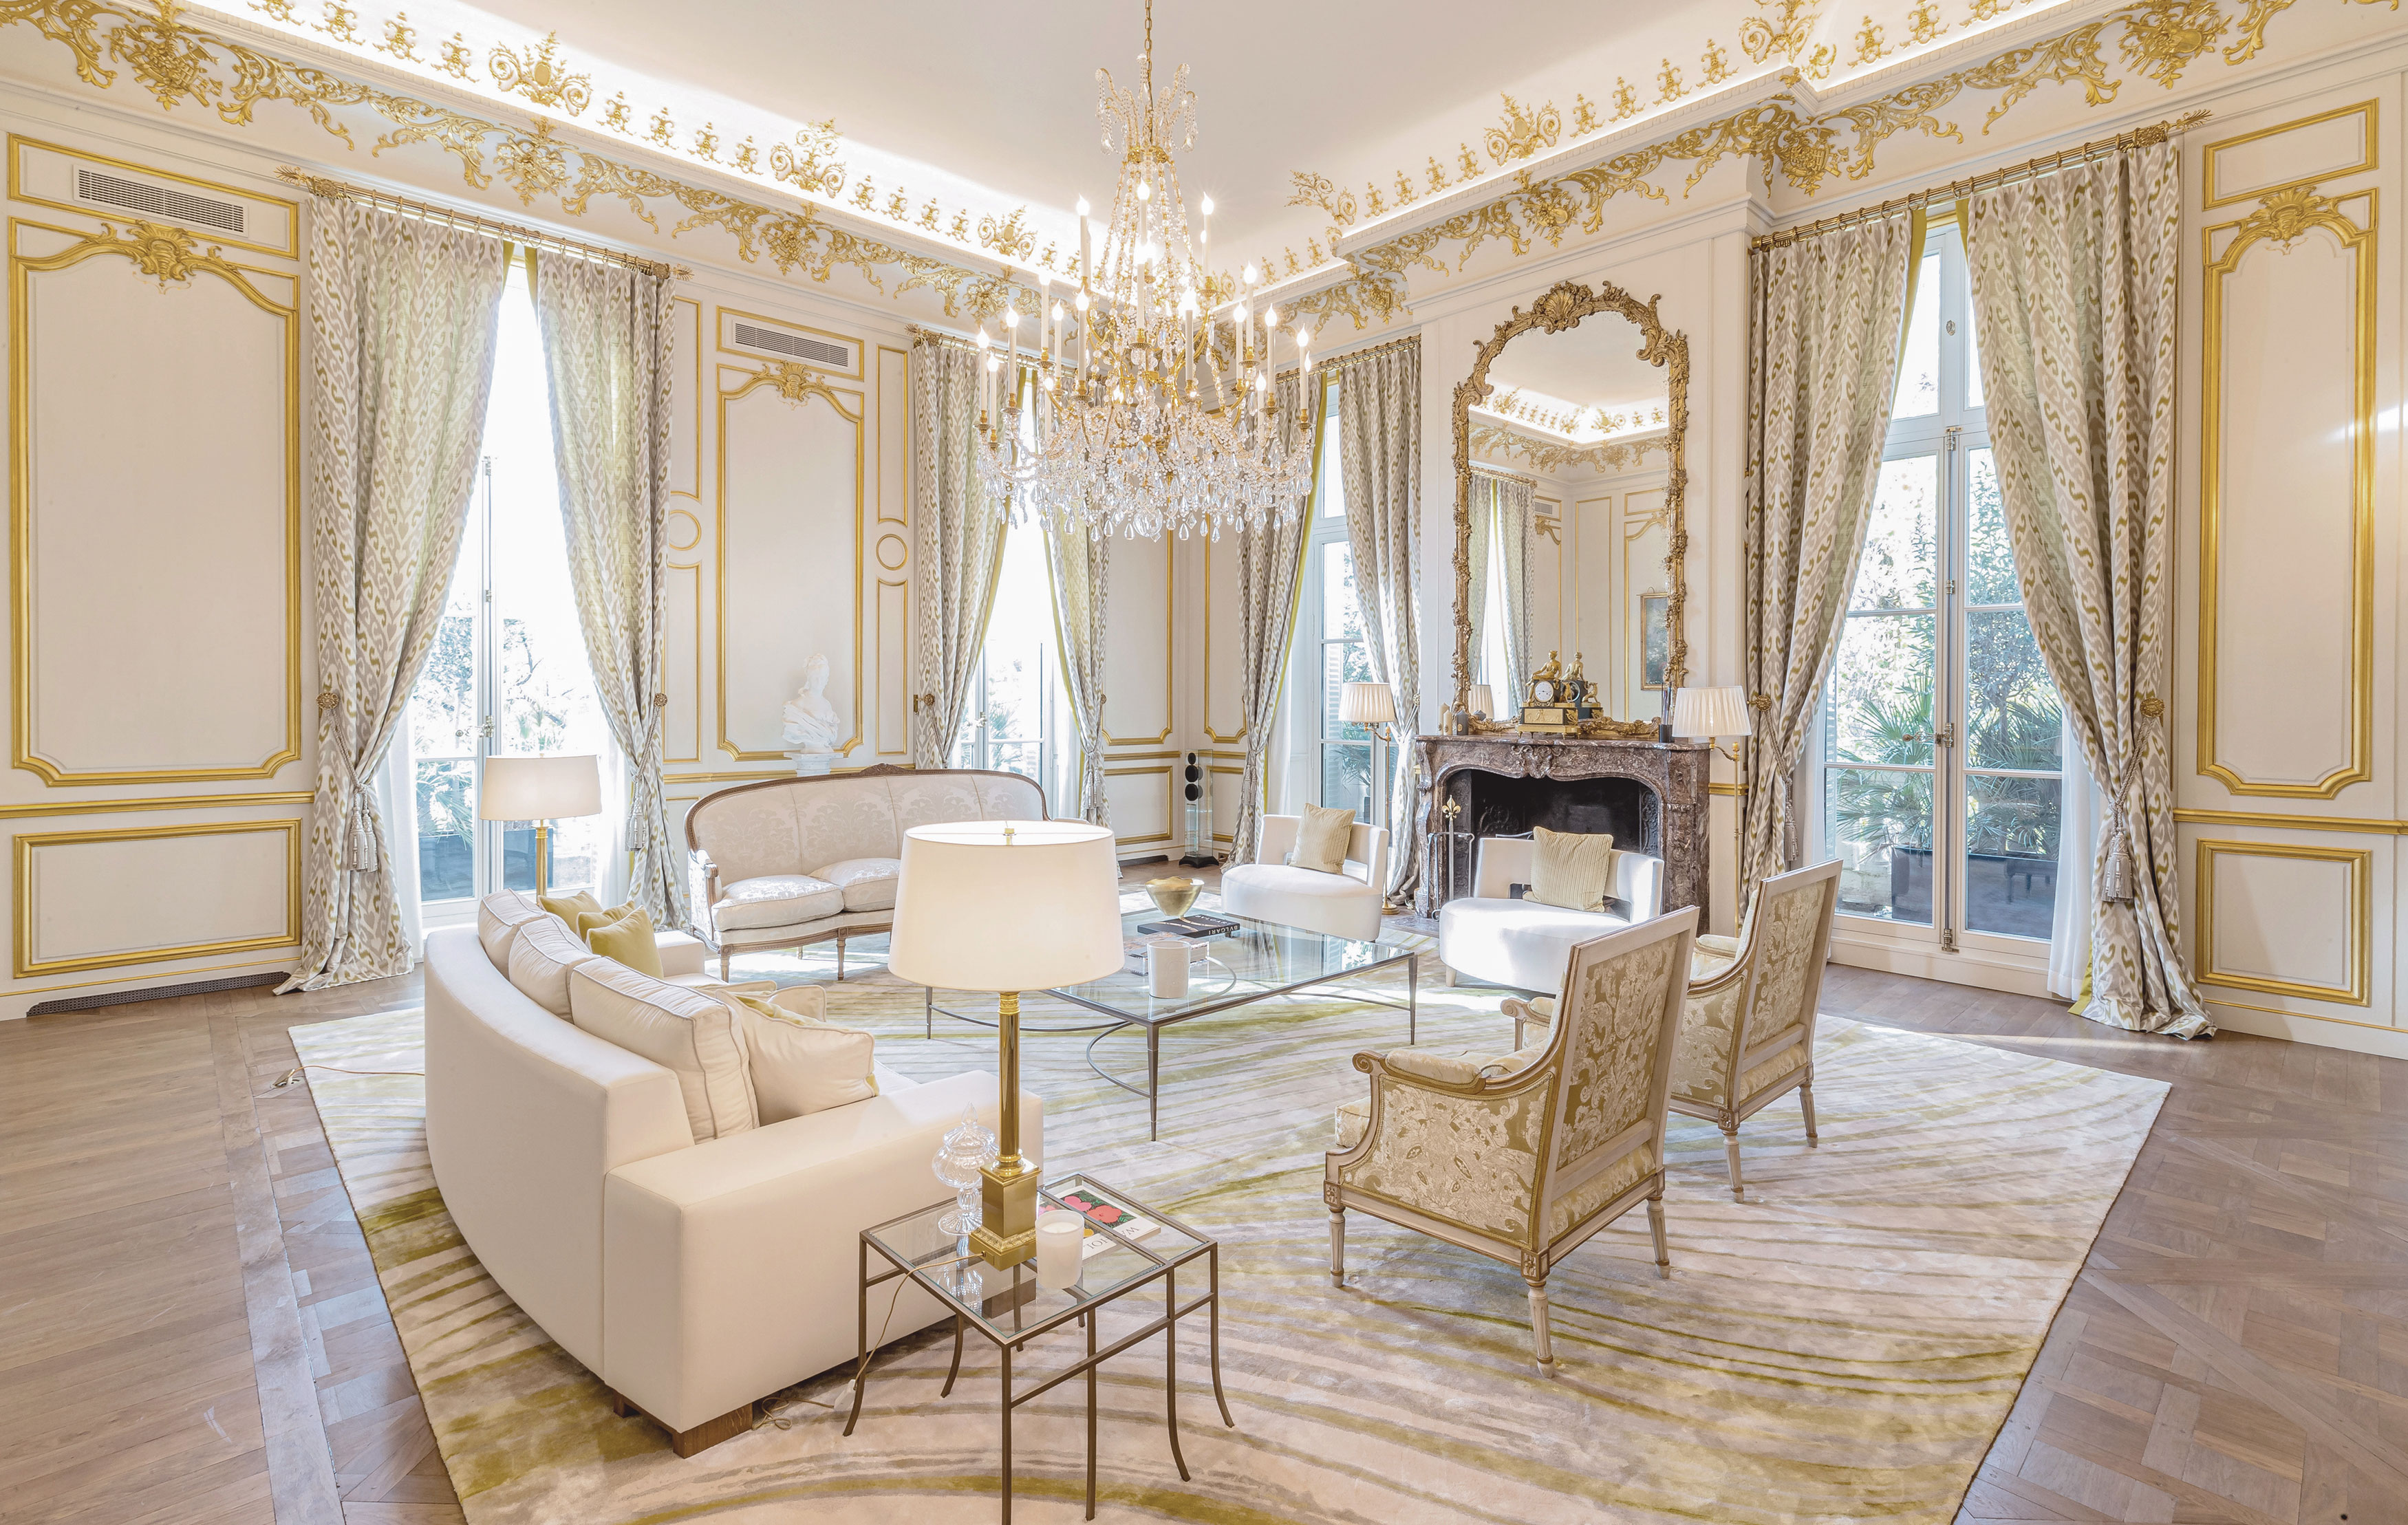 Living area in a luxurious apartment duplex in Paris